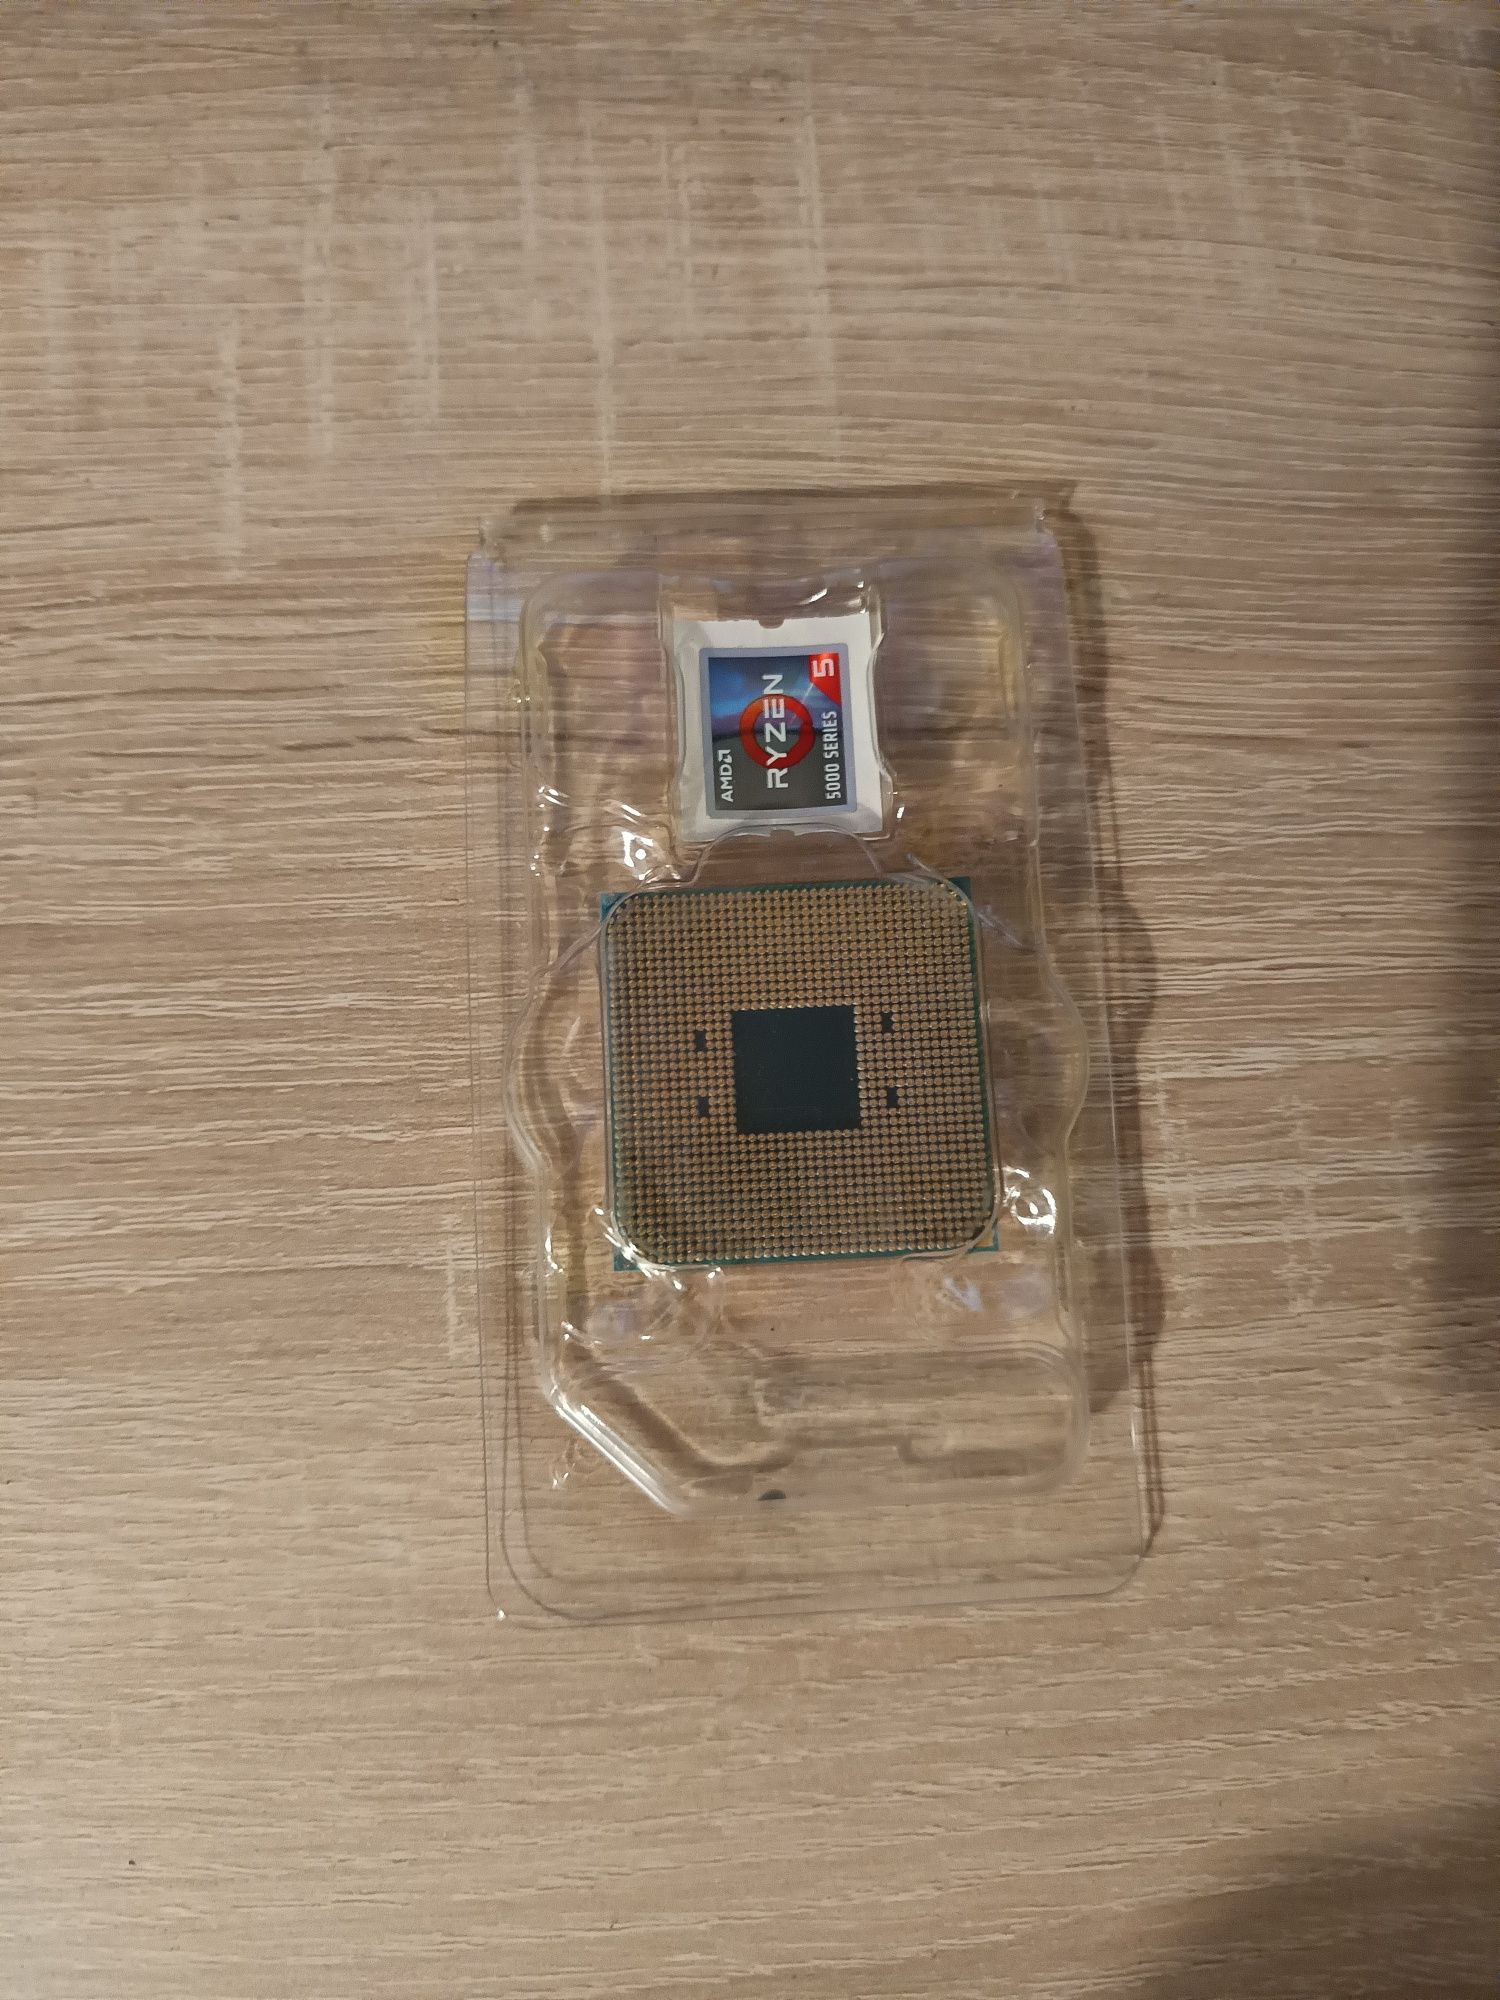 procesor AMD Athlon 3000g z grafiką radeon vega 3